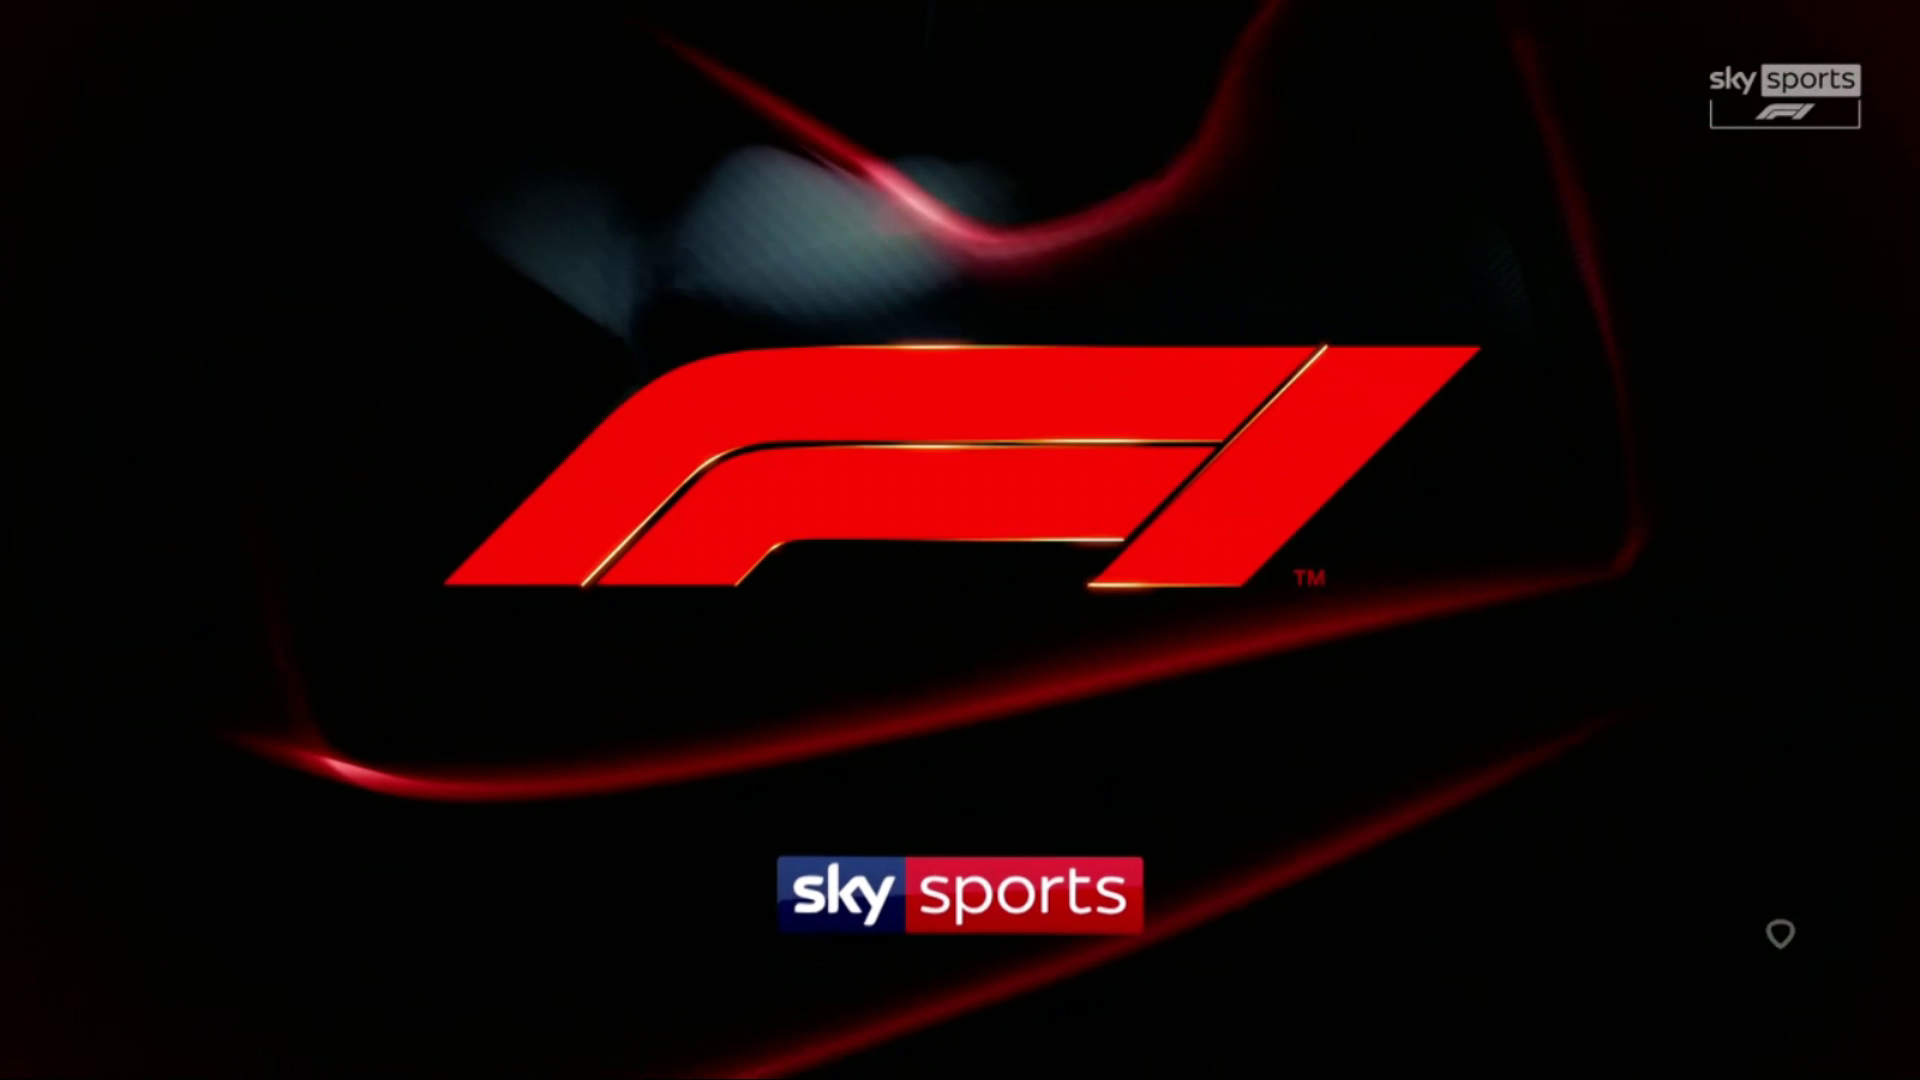 Sky Sports Formule 1 - 2021 Race 21 - Saoedi-Arabië - Race - 1080p